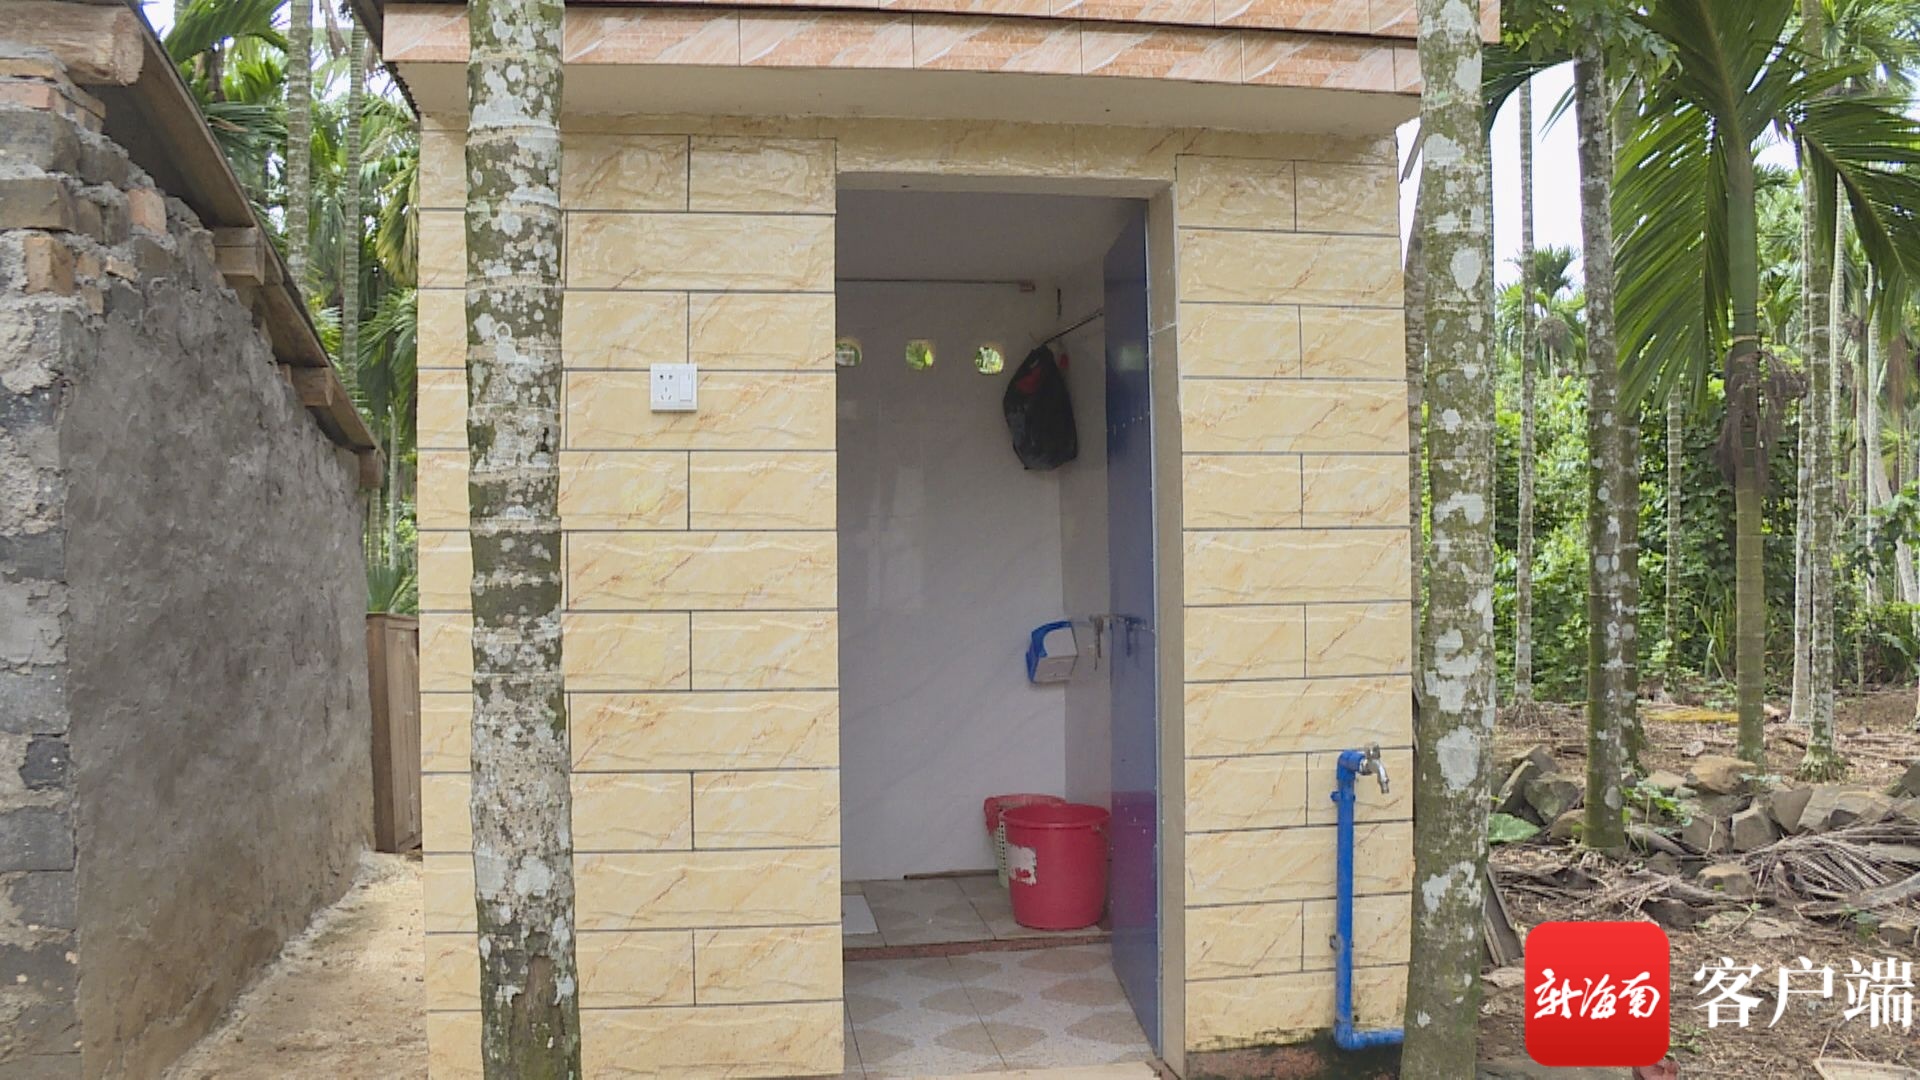 琼海4710座农村无害化卫生厕所落成 基本实现农村卫生厕所全覆盖的目标